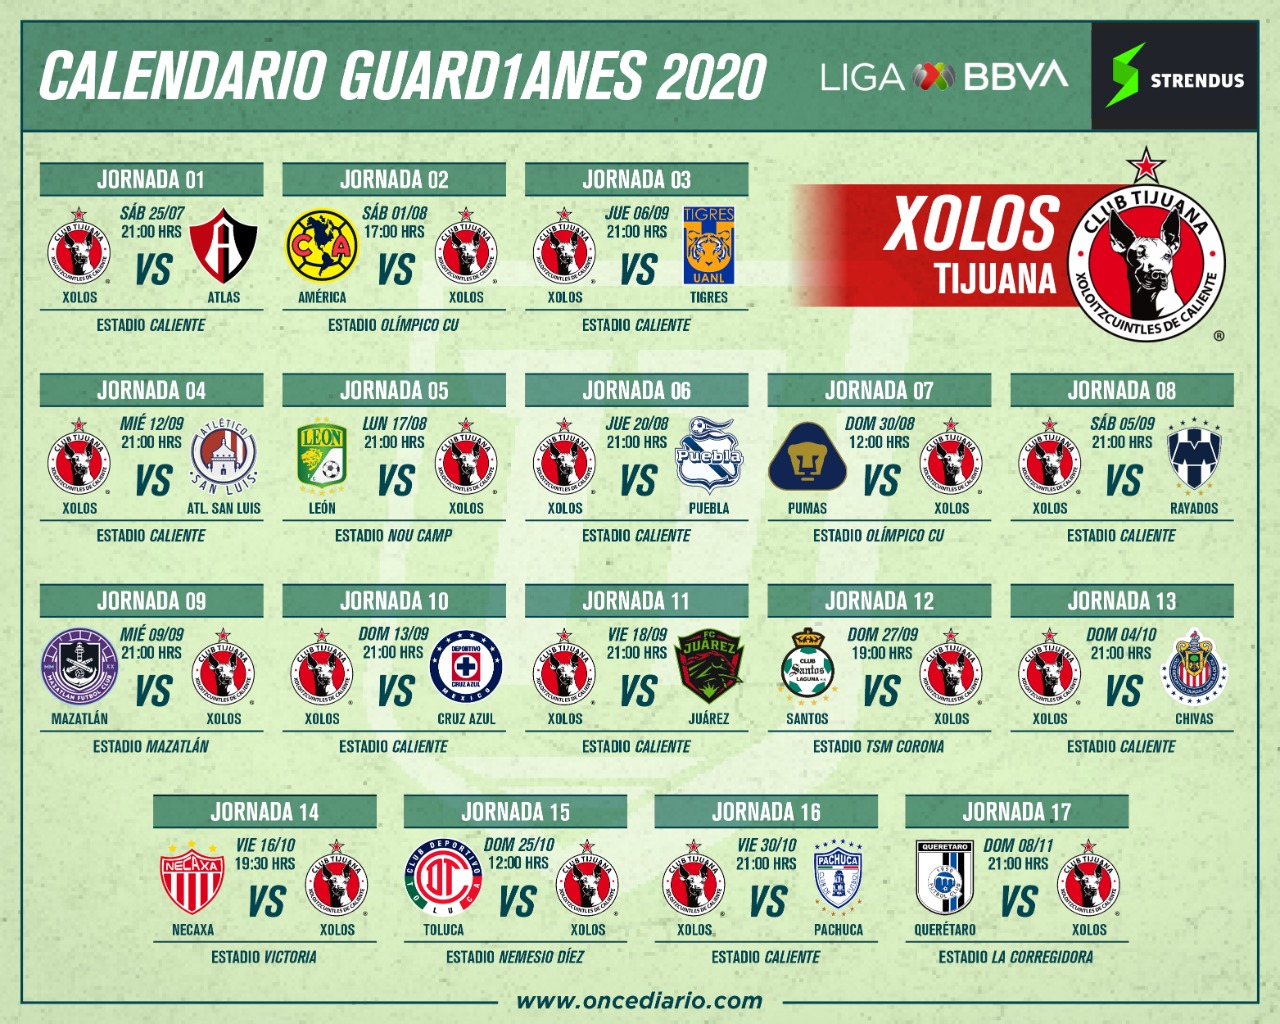 CALENDARIO DE XOLOS PARA EL GUARD1ANES 2020